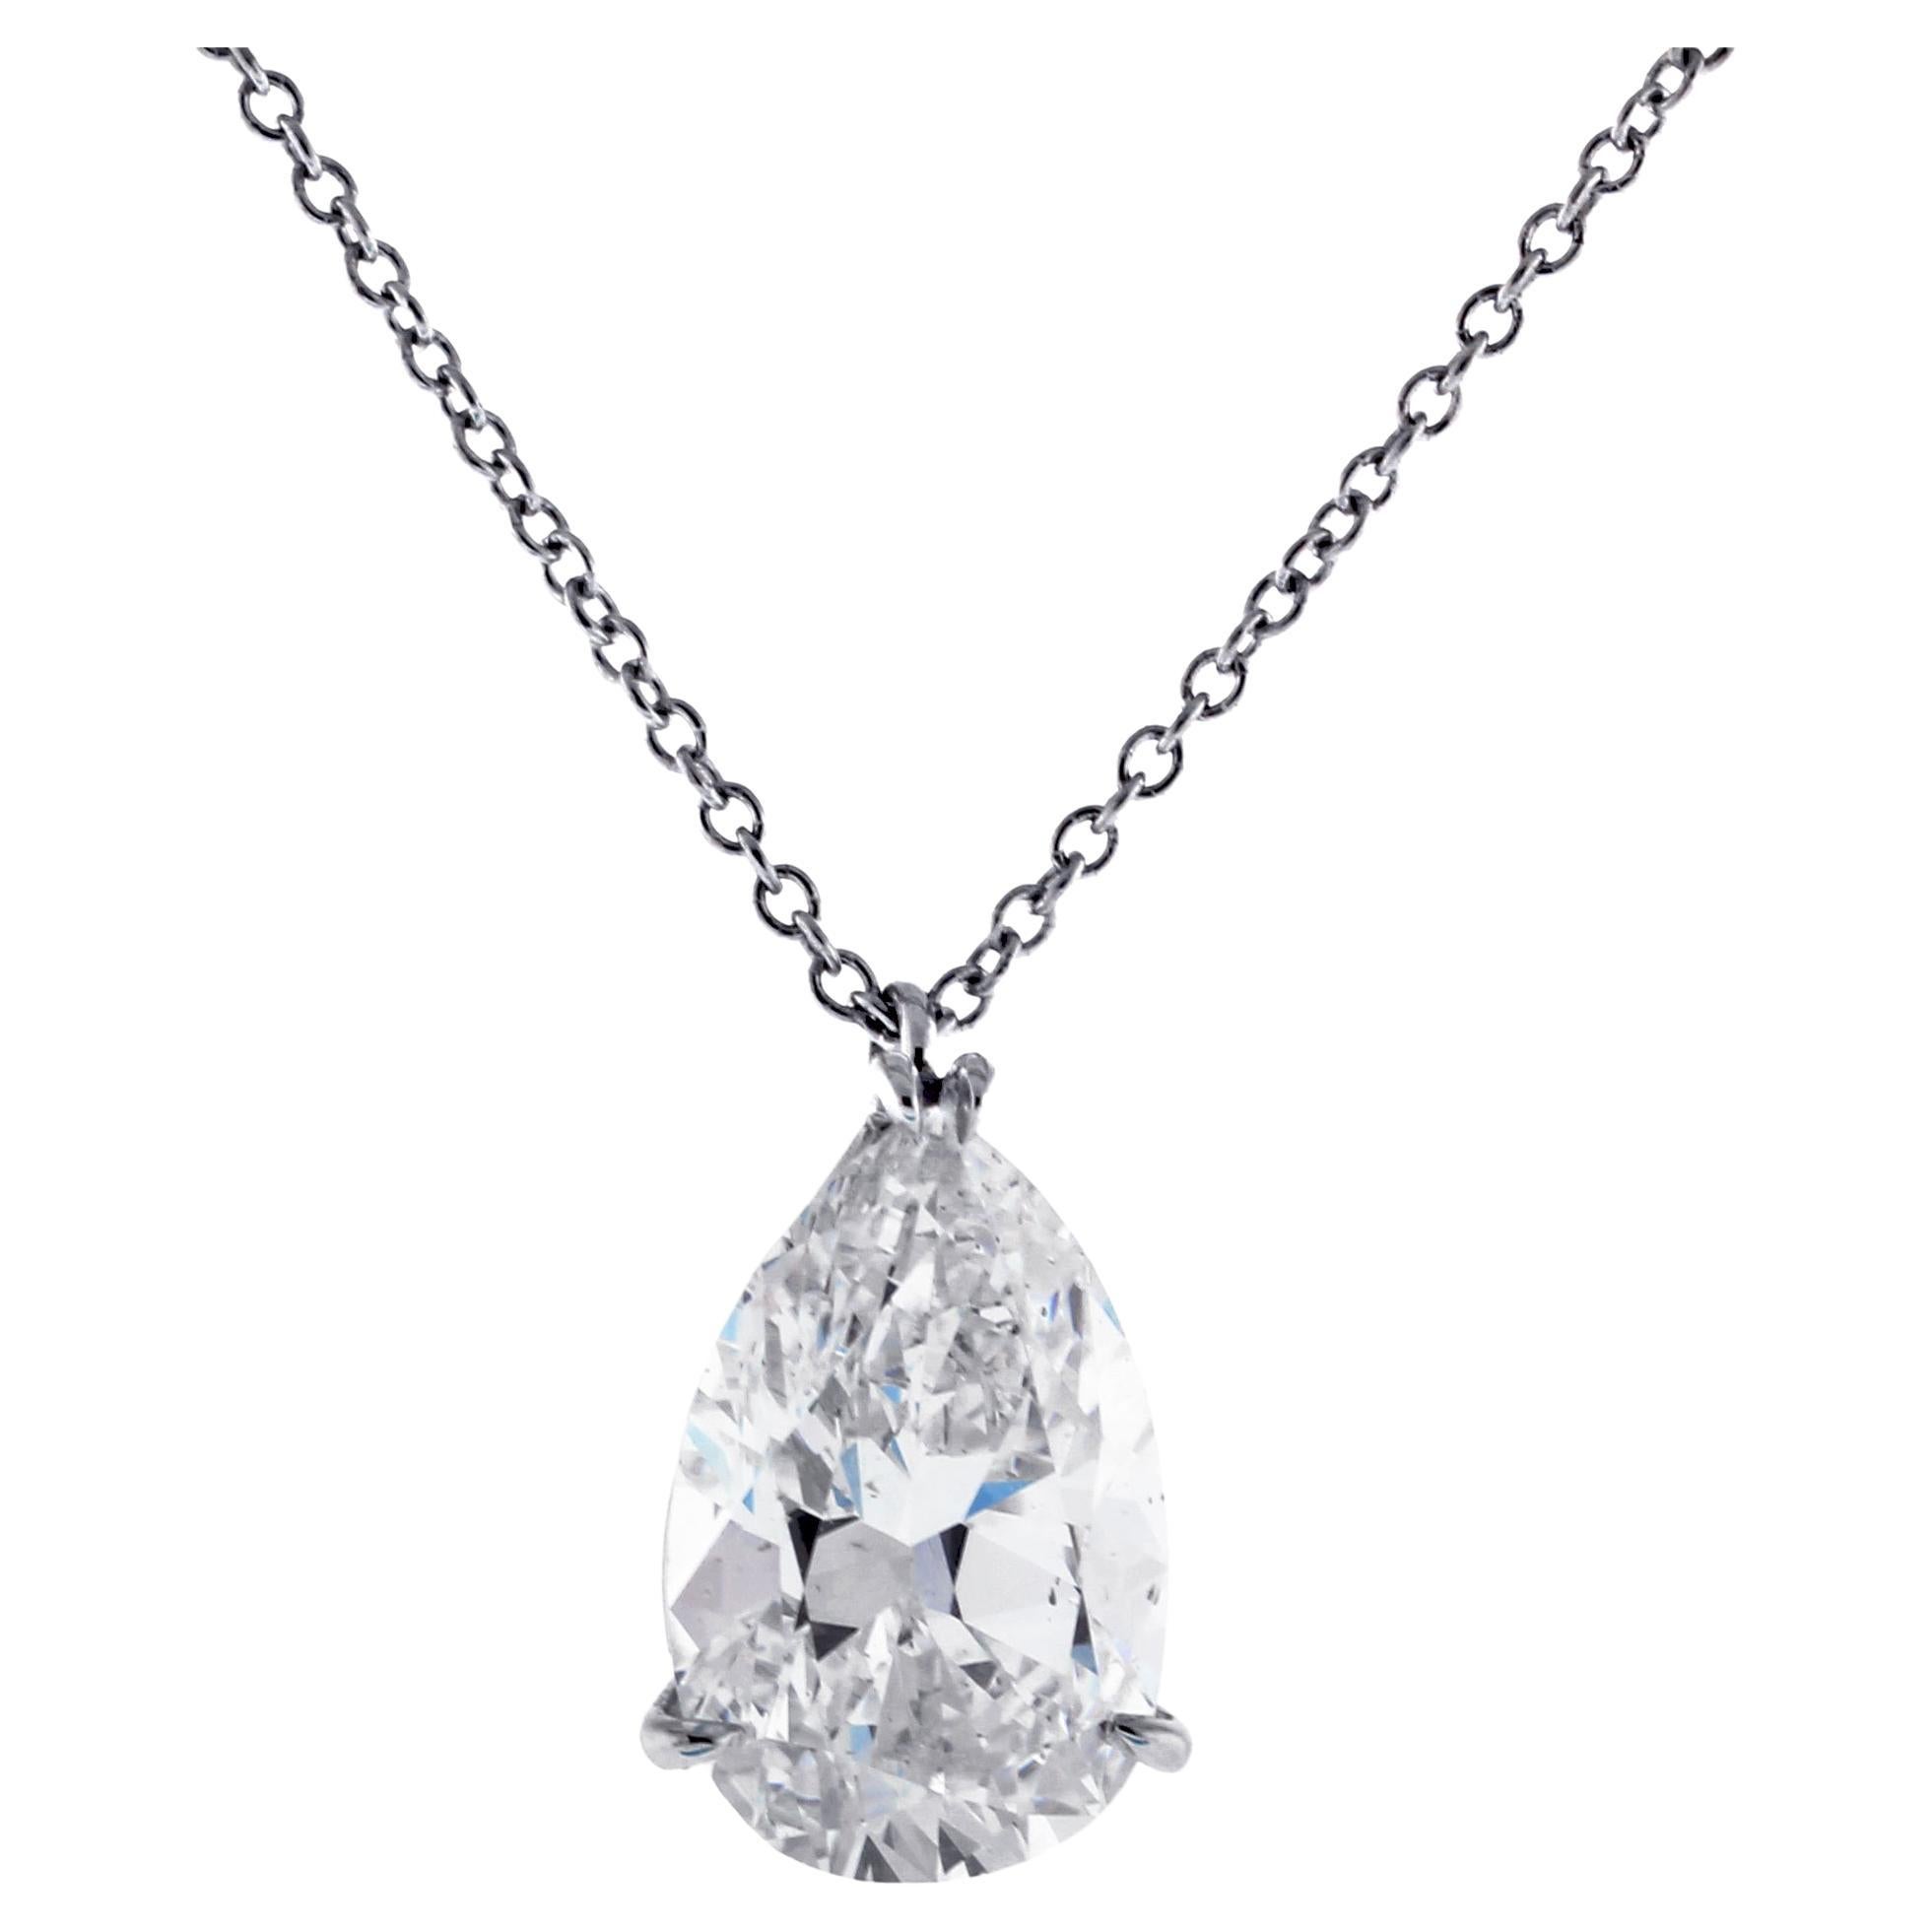 3.21 Carat Pear-Cut Golconda Diamond Pendant Necklace